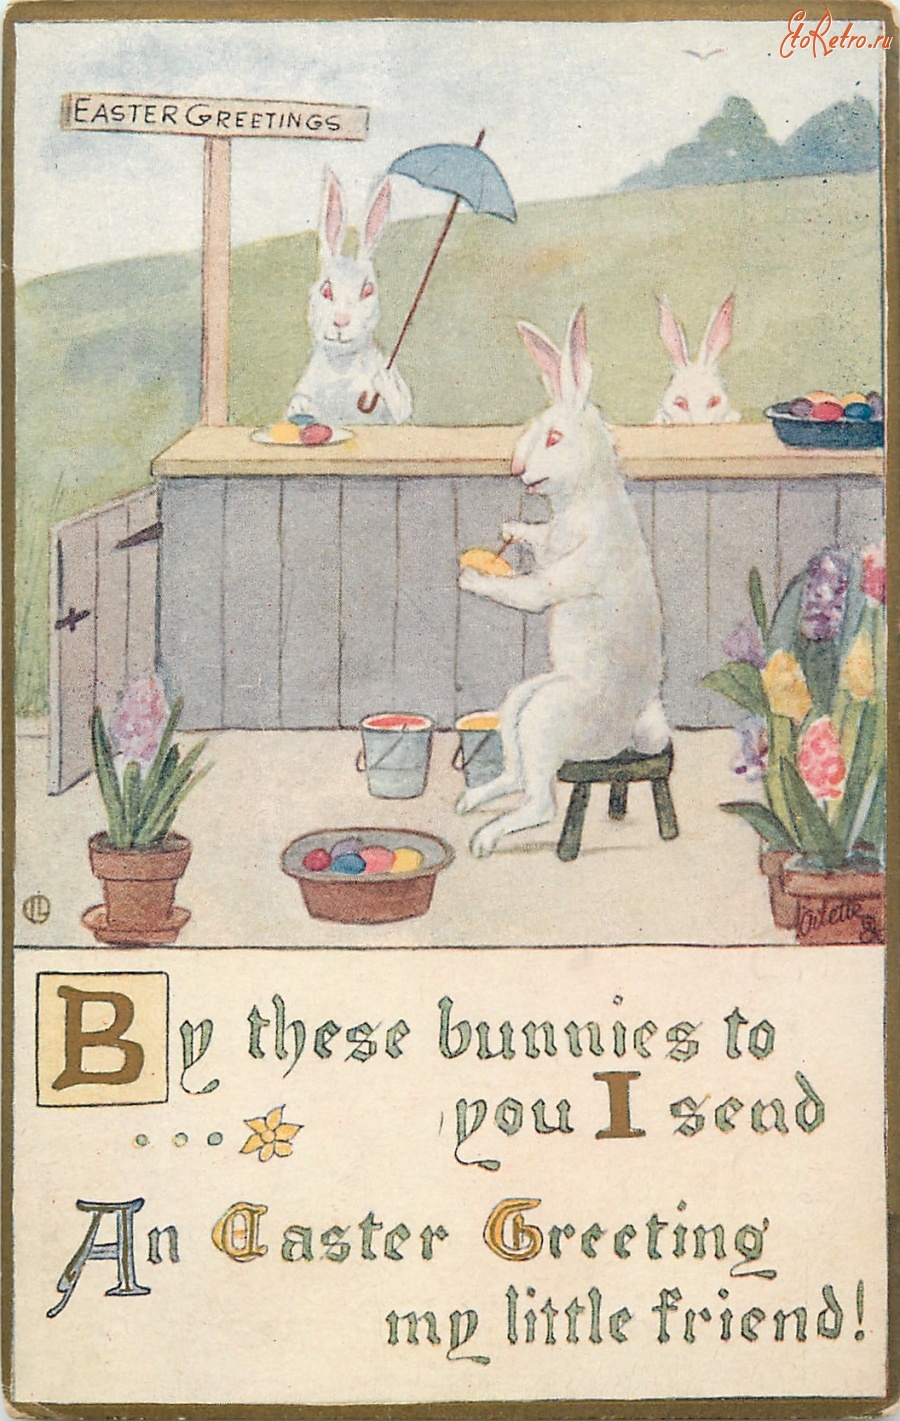 Ретро открытки - Кролик-художник, гиацинты и пасхальная корзина